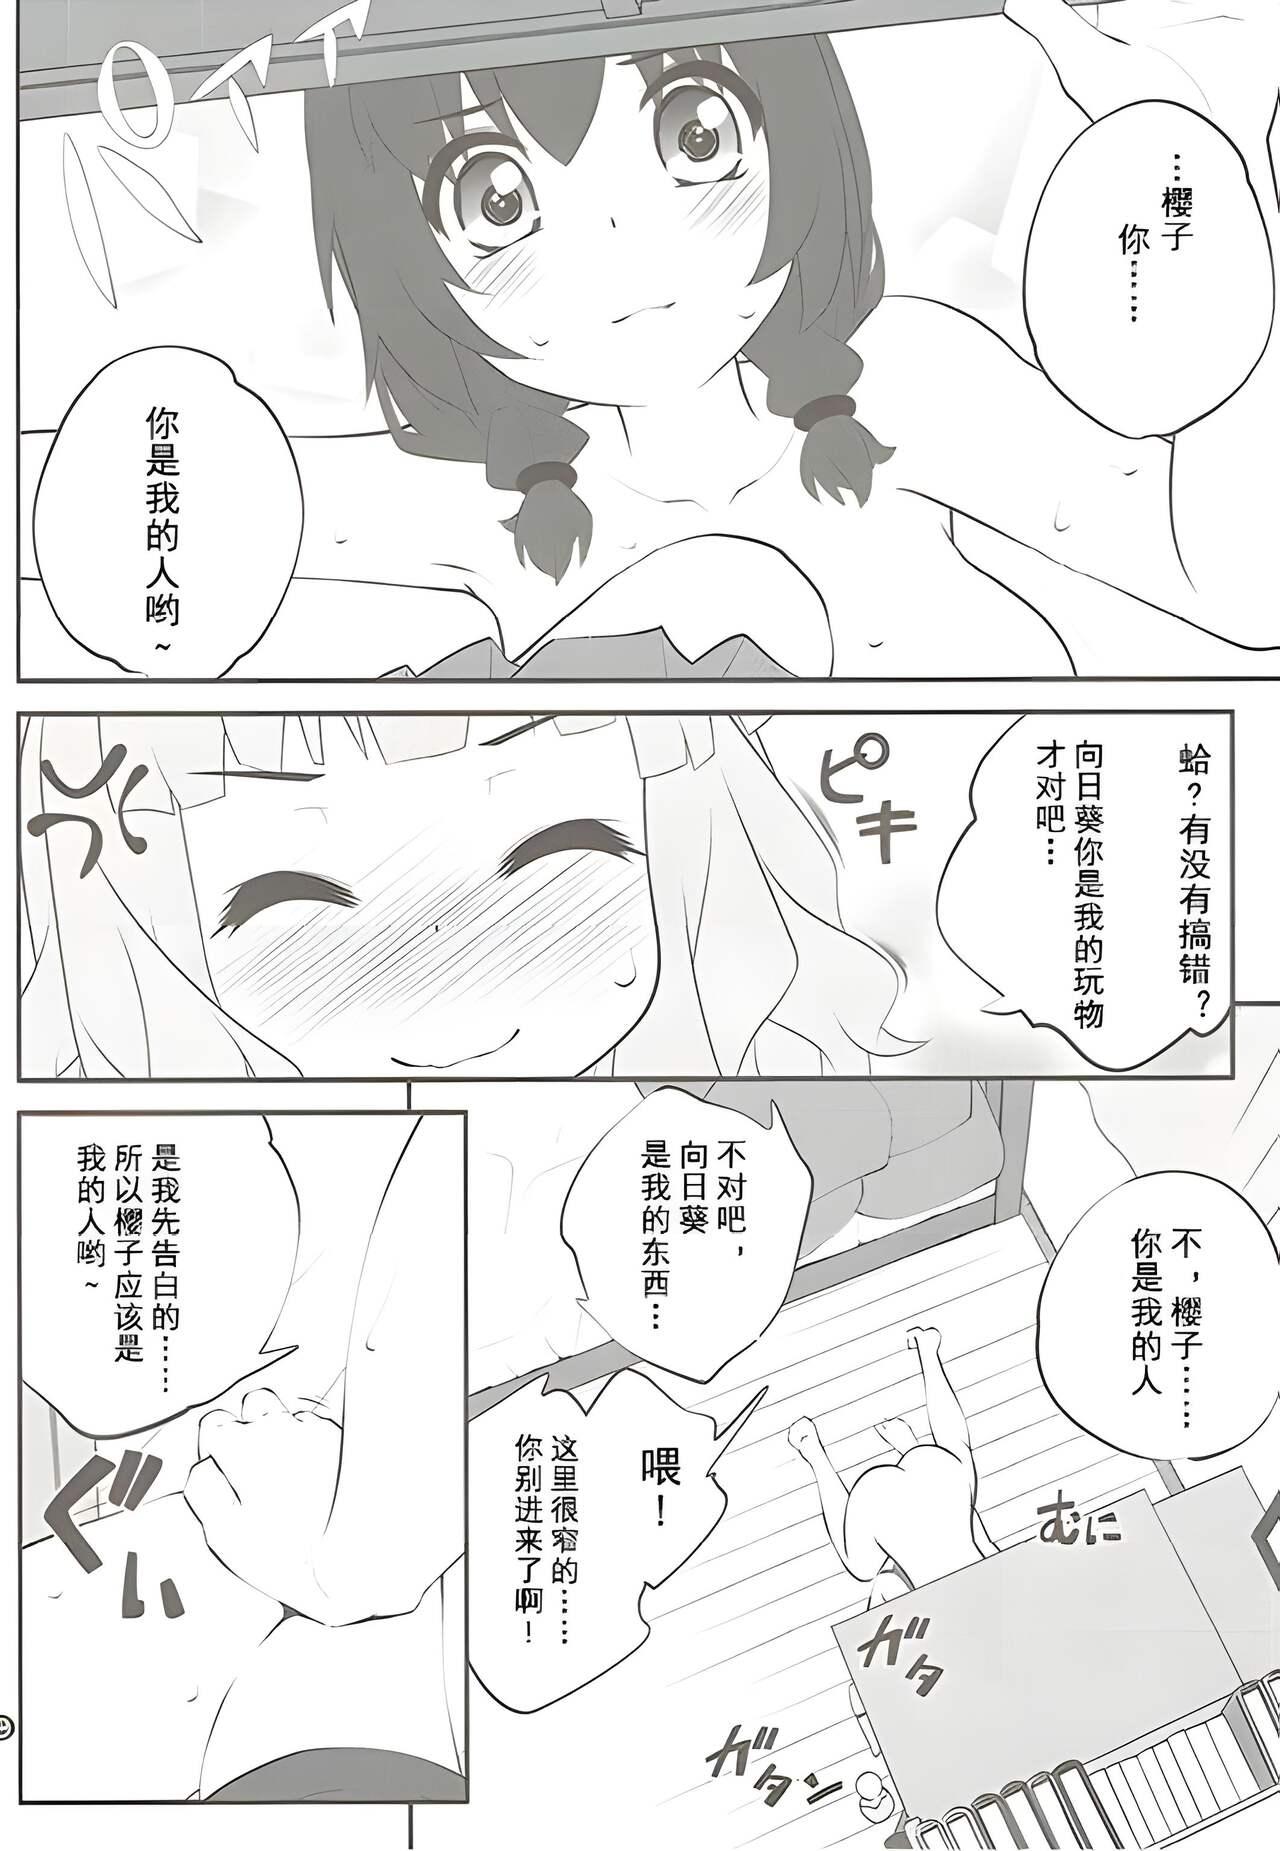 Farting Himegoto Flowers 11 - Yuruyuri Gay Boysporn - Page 7